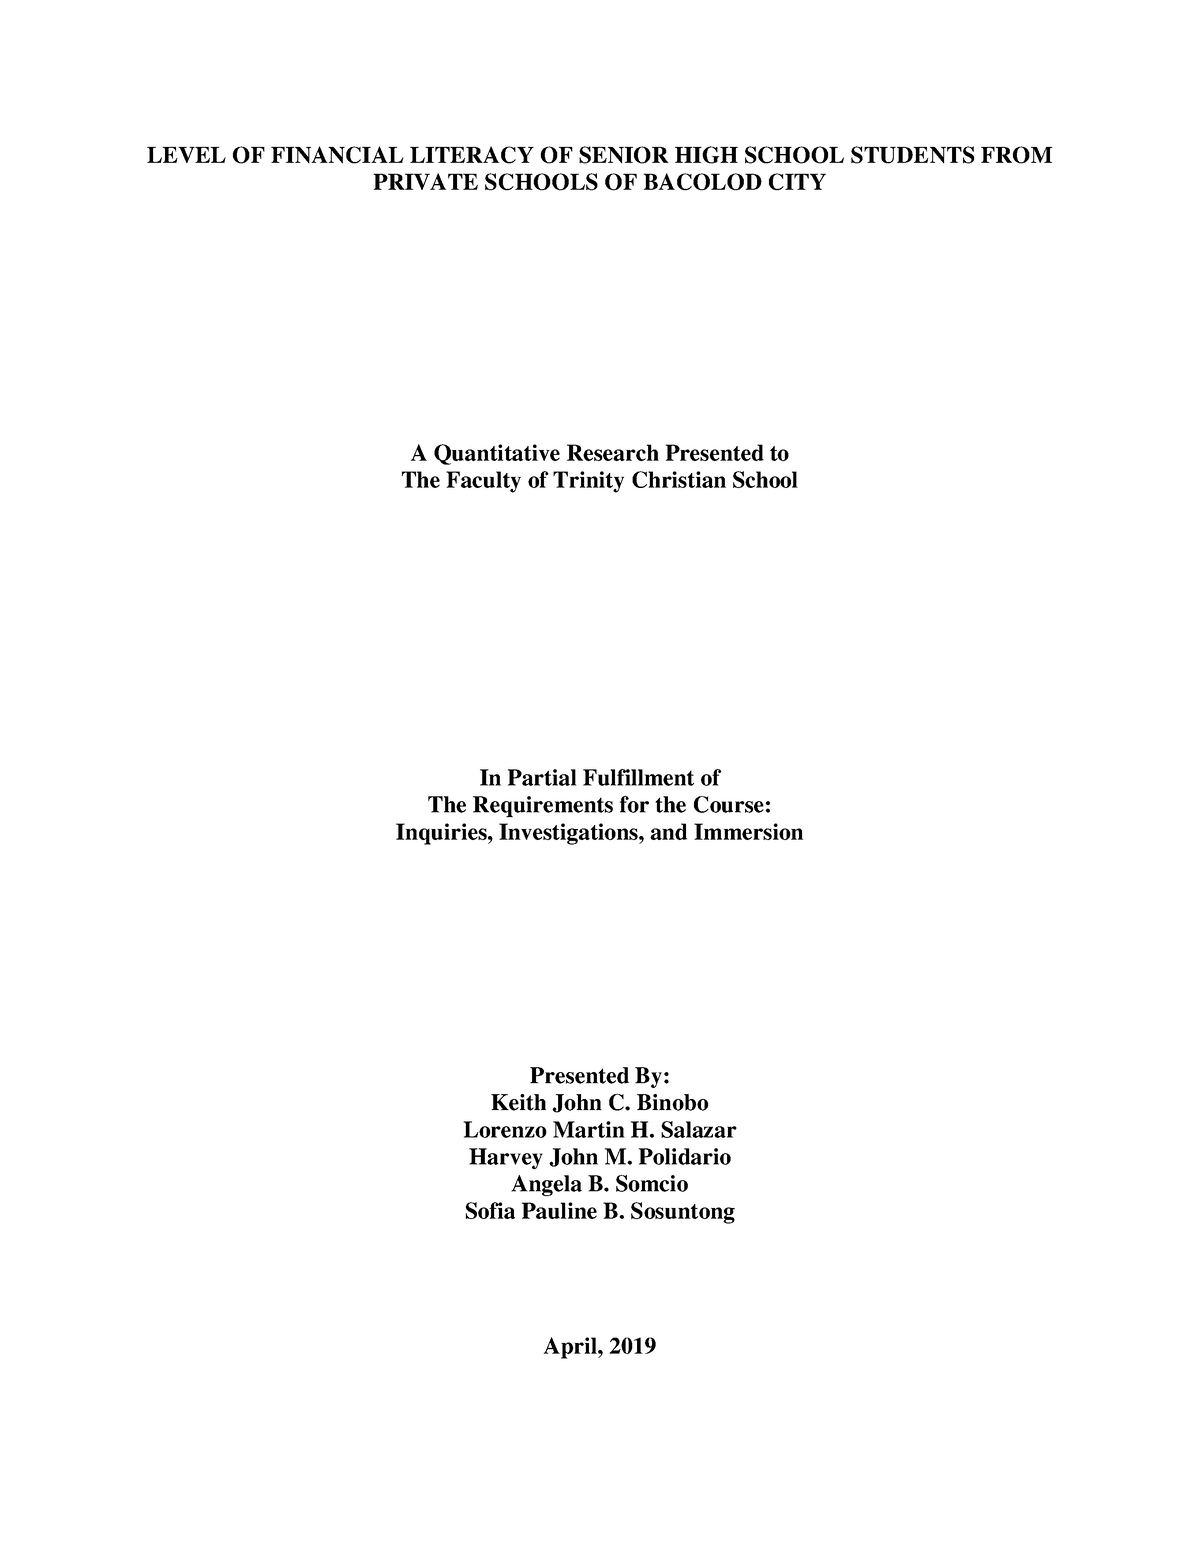 financial literacy thesis pdf